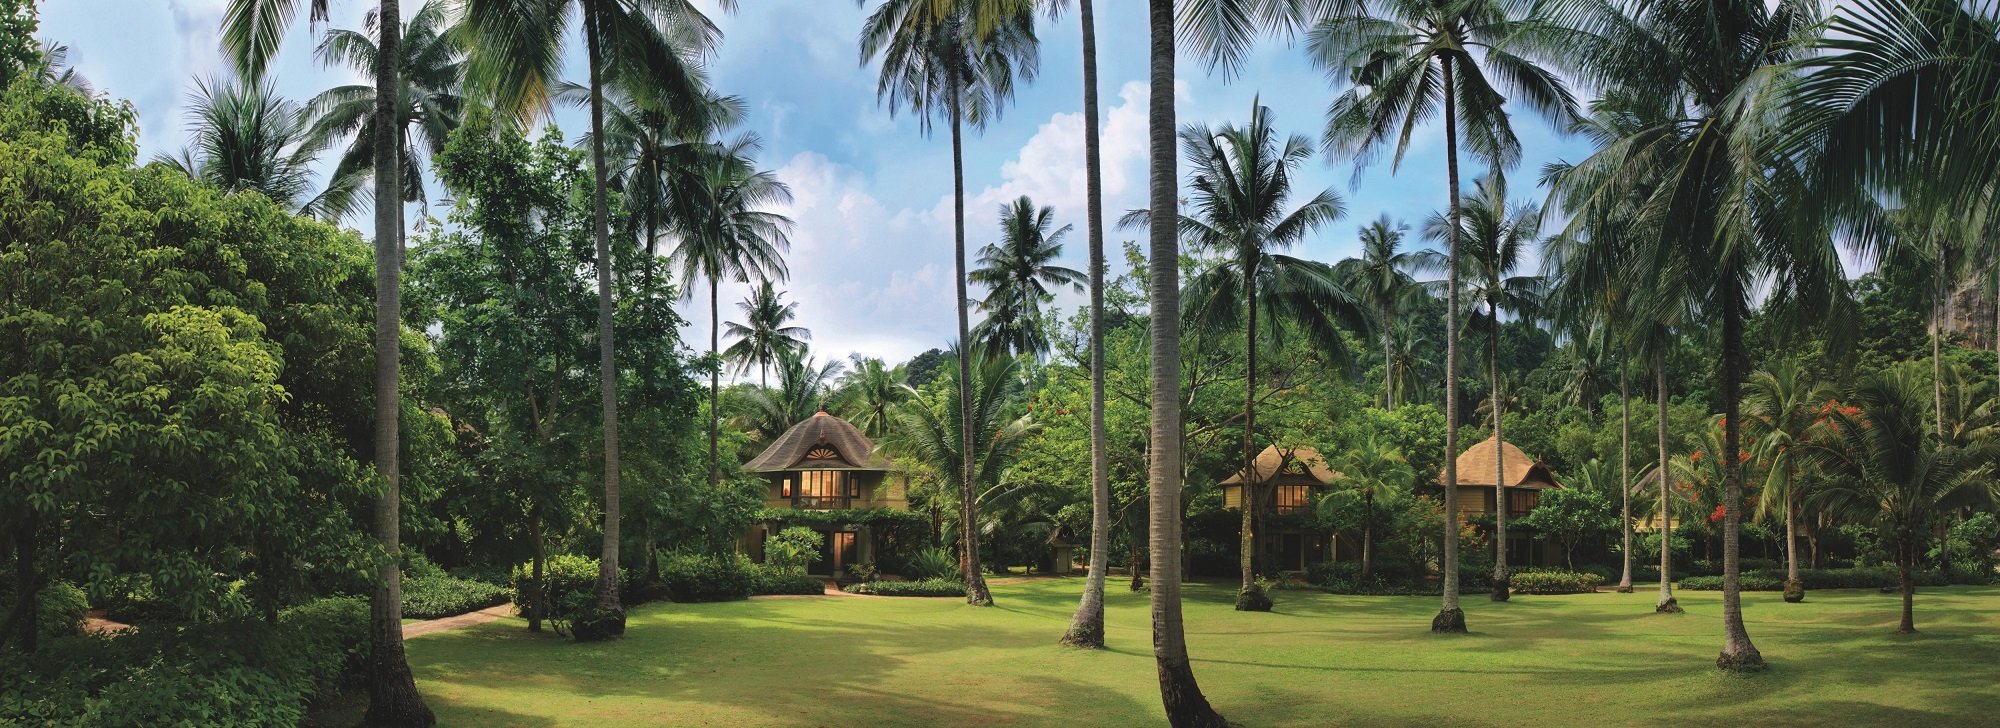 Coconut Lawn & Pavilions.jpg